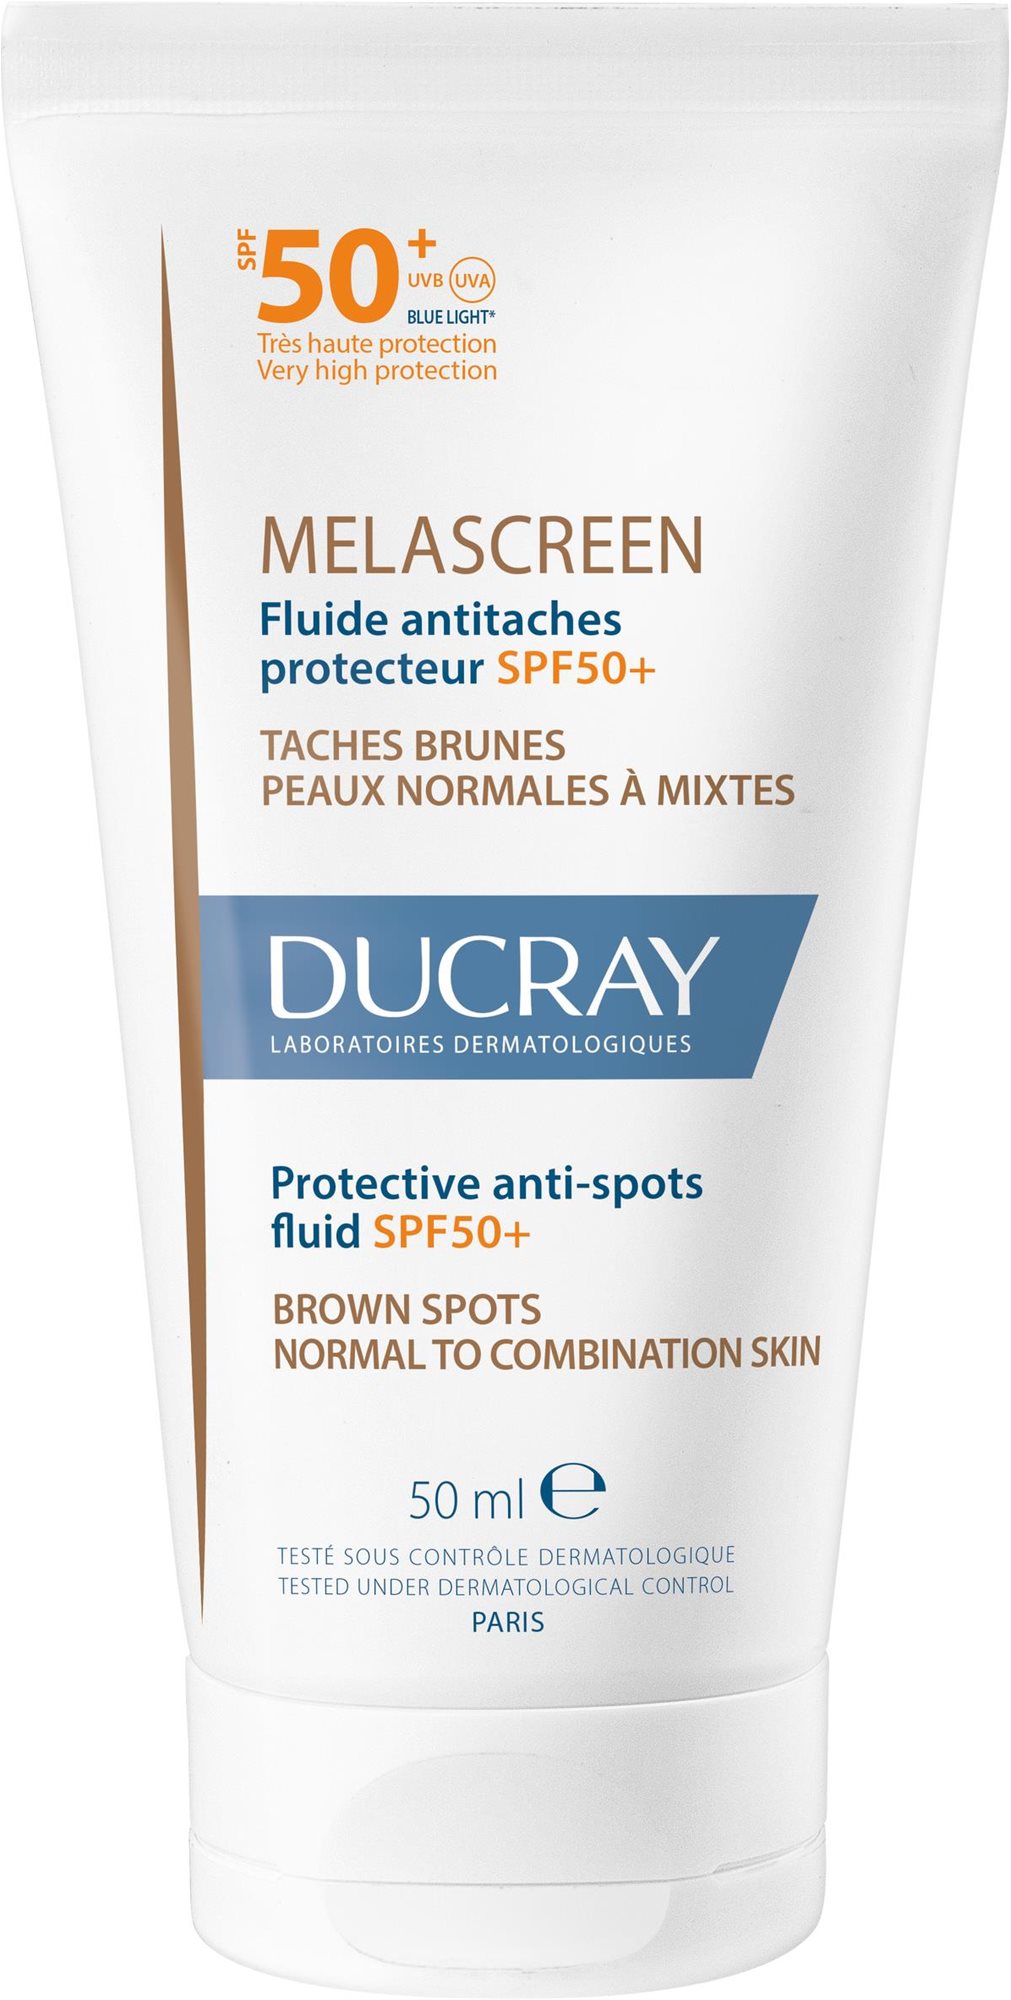 Arckrém DUCRAY Melascreen védőfolyadék SPF50+ 50ml